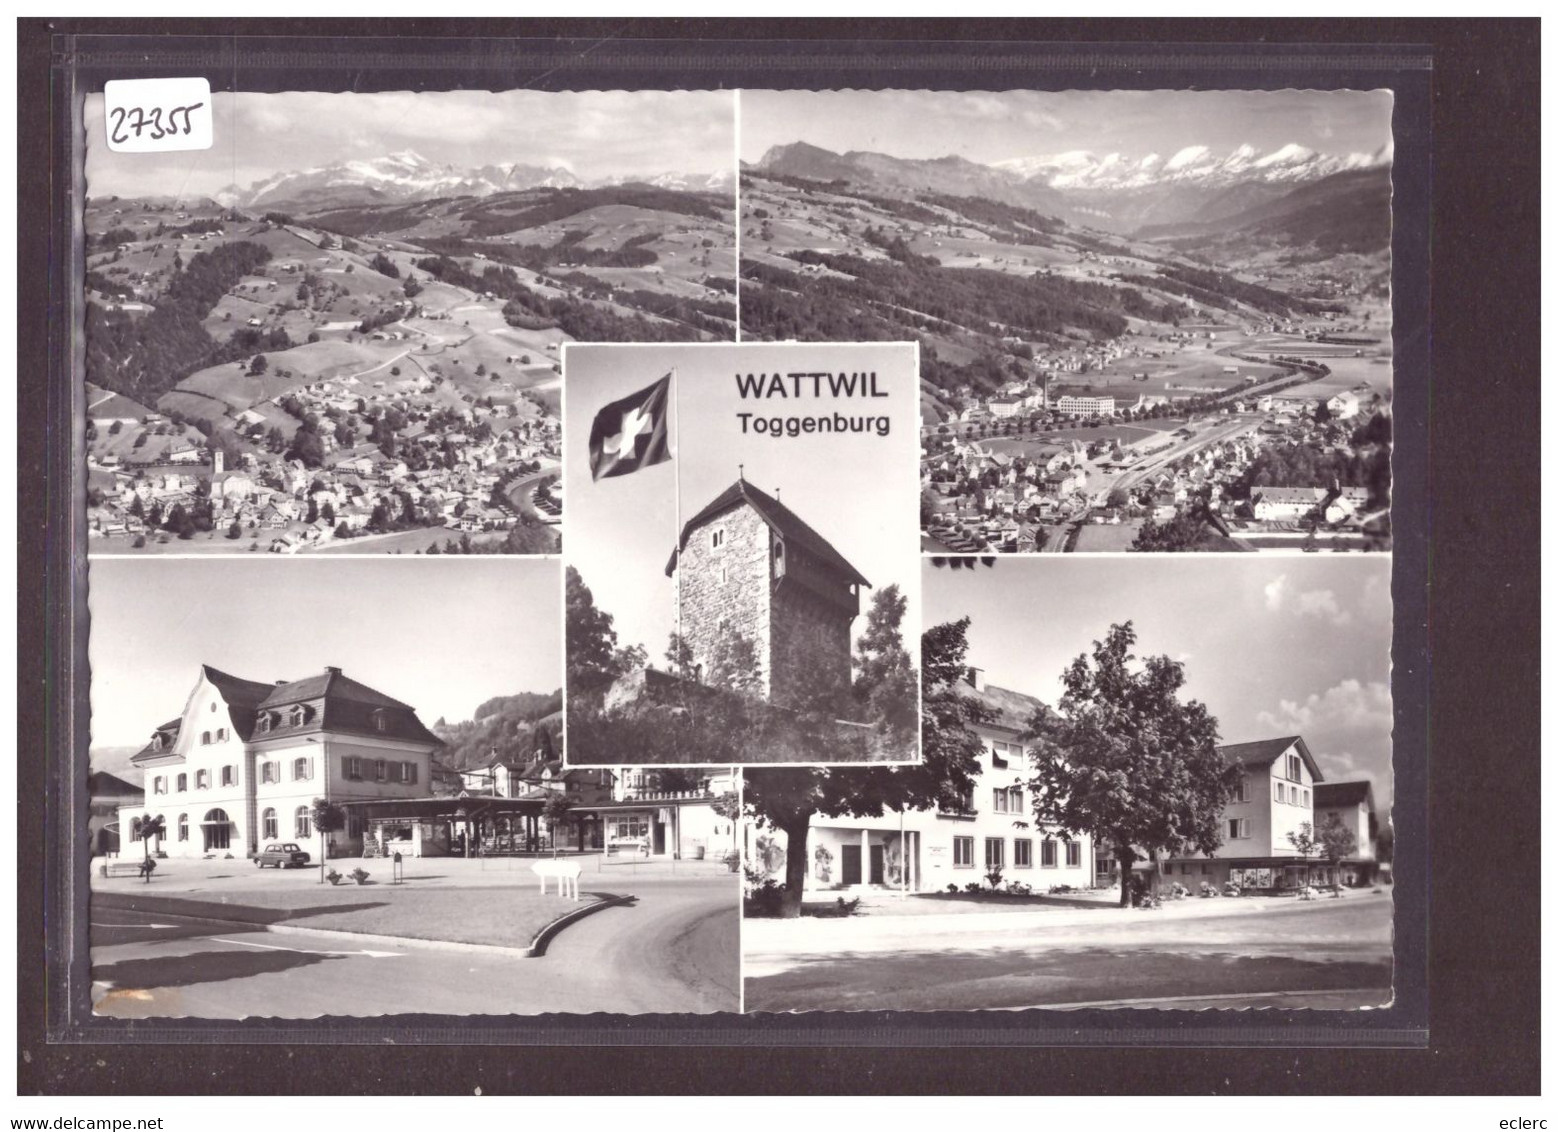 GRÖSSE 10x15cm - WATTWIL - TB - Wattwil